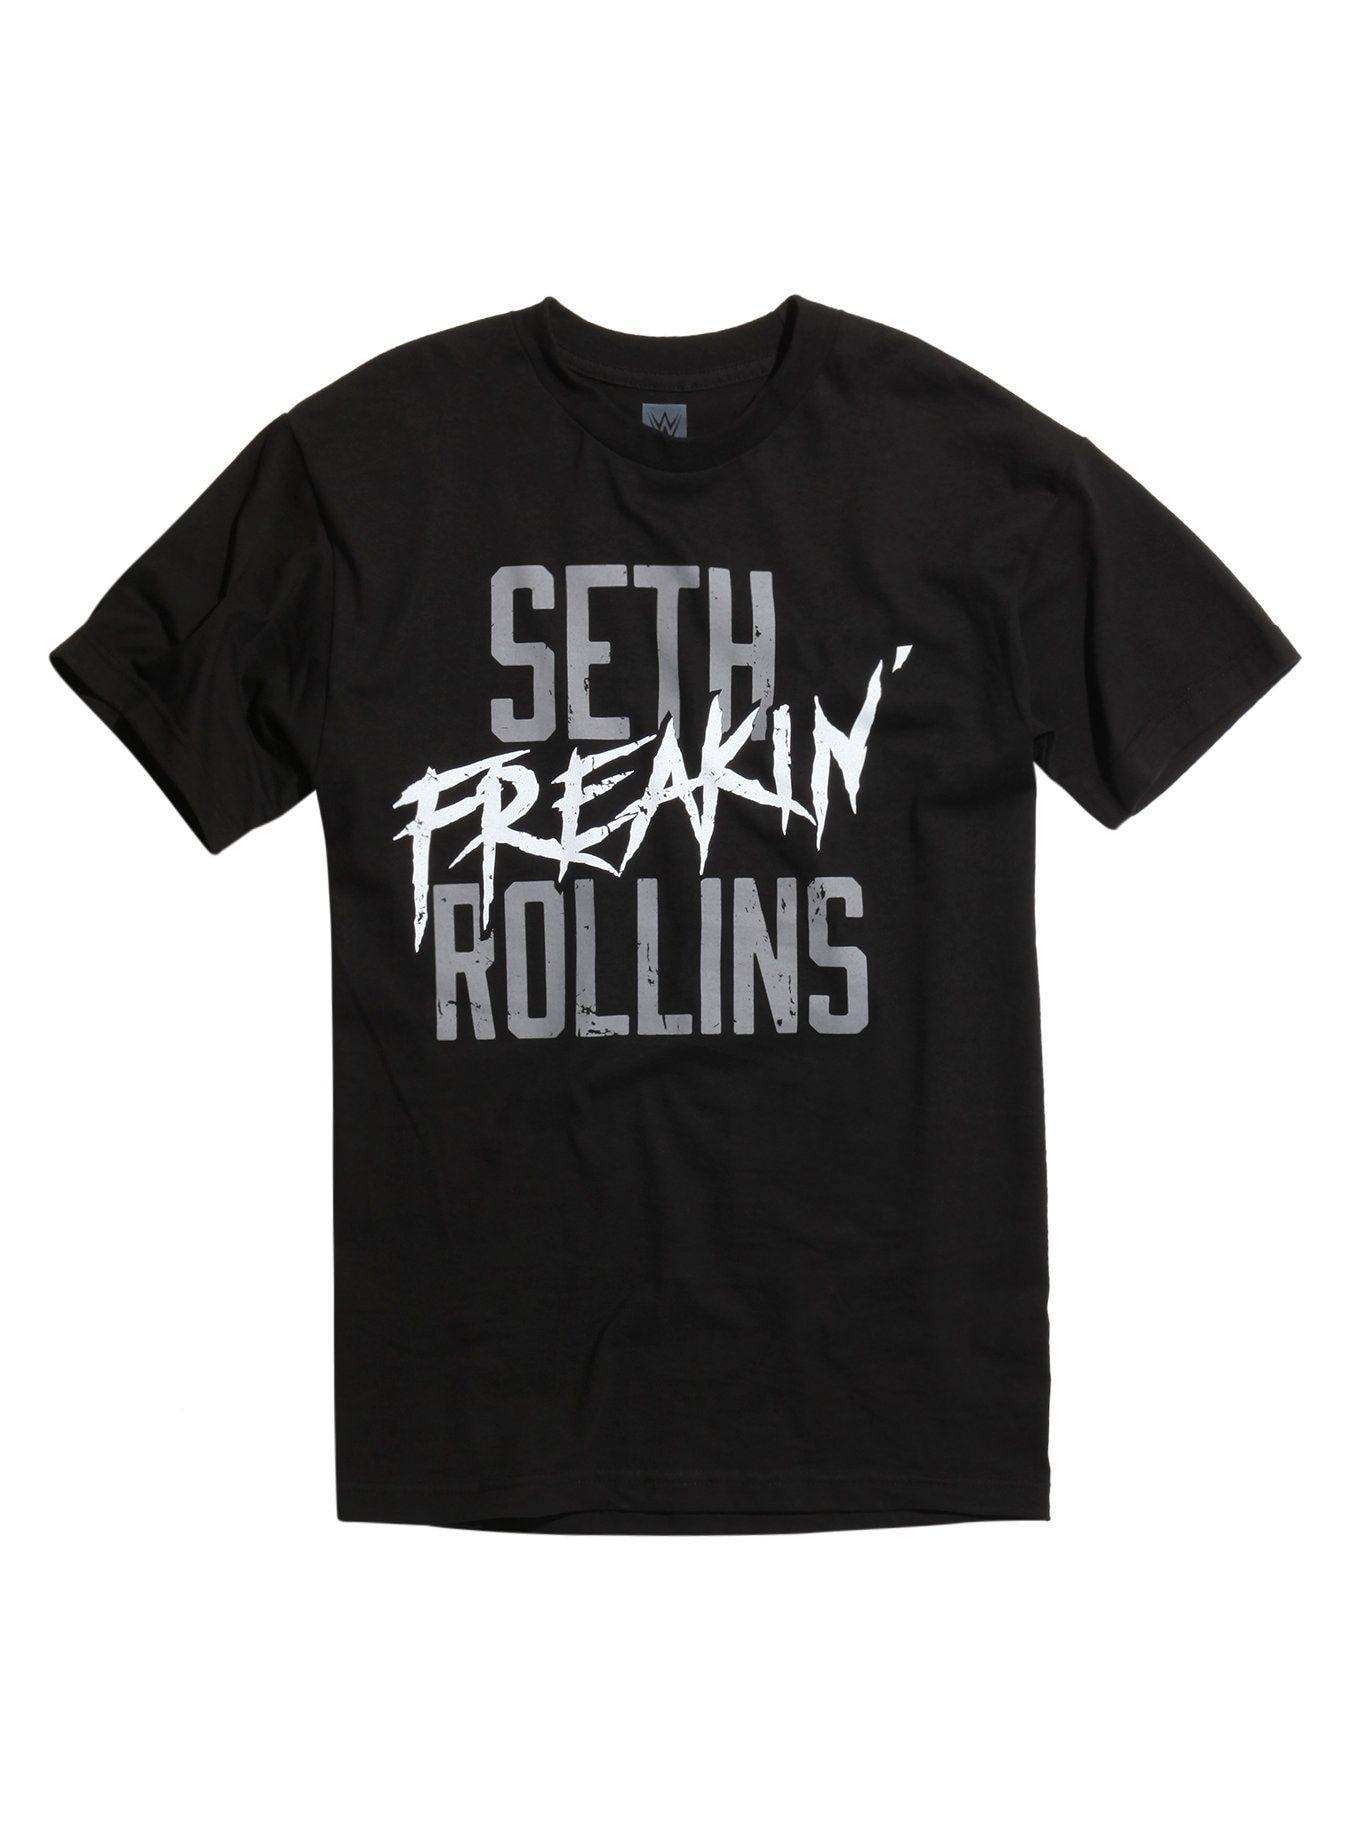 WWE Seth Rollins Logo - WWE Seth Rollins Seth Freakin' Rollins T-Shirt